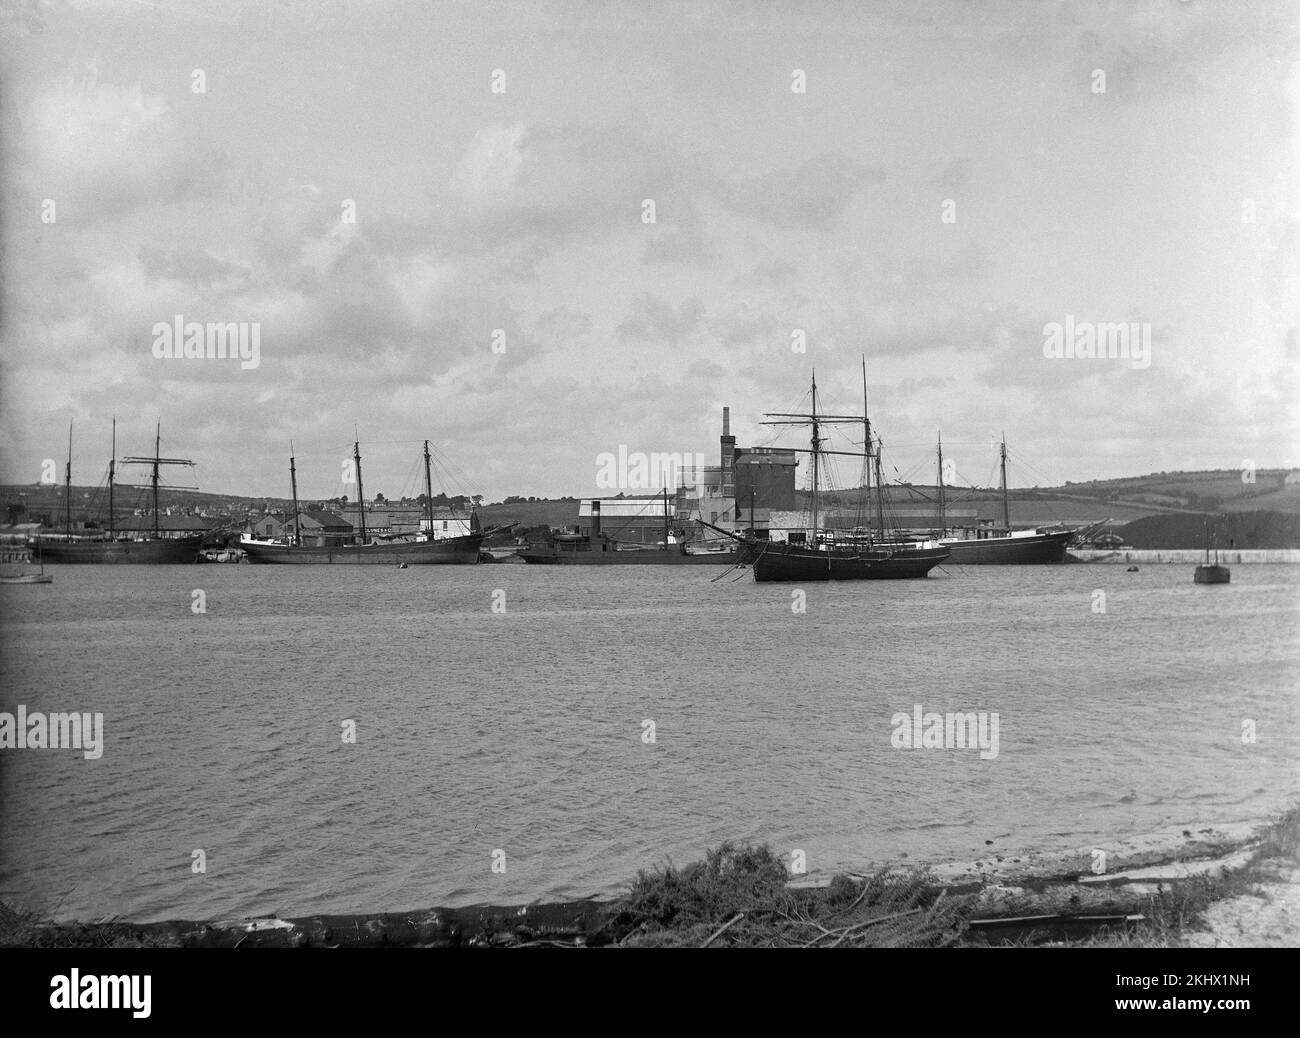 Una fotografia inglese tardo vittoriana che mostra una varietà di navi a vela e barche in un porto. Foto Stock